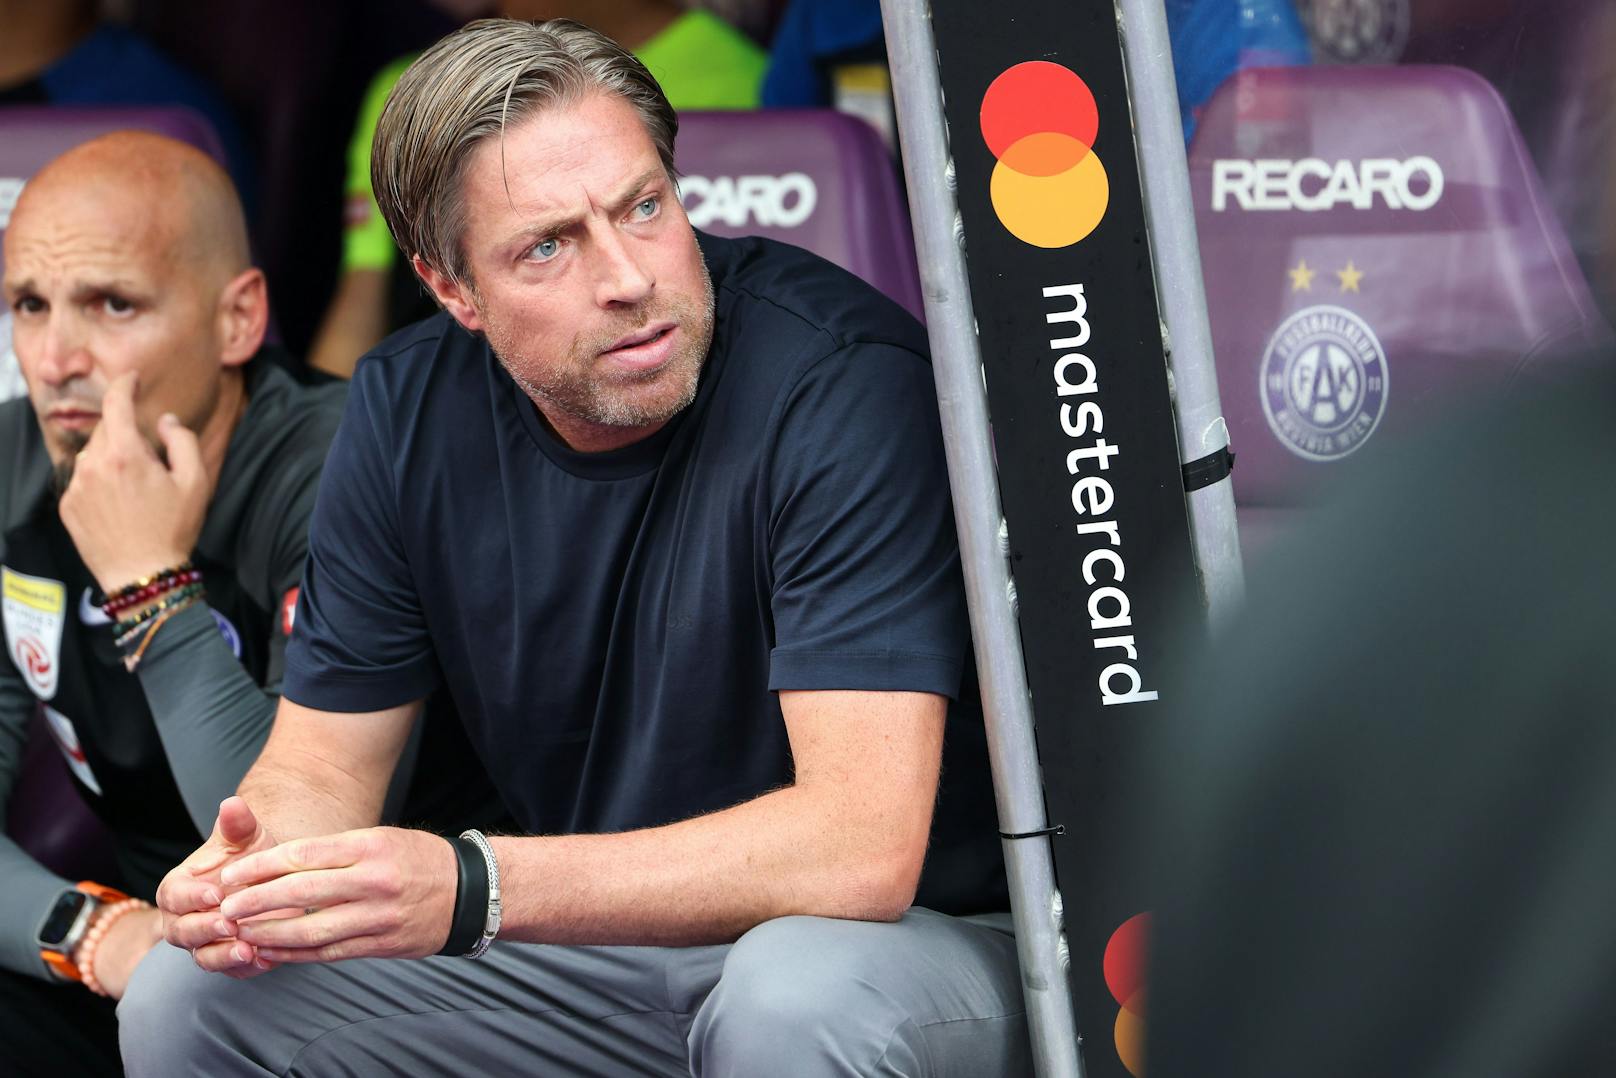 Austria-Trainer Wimmer schlägt Alarm: "Zu wenig!"